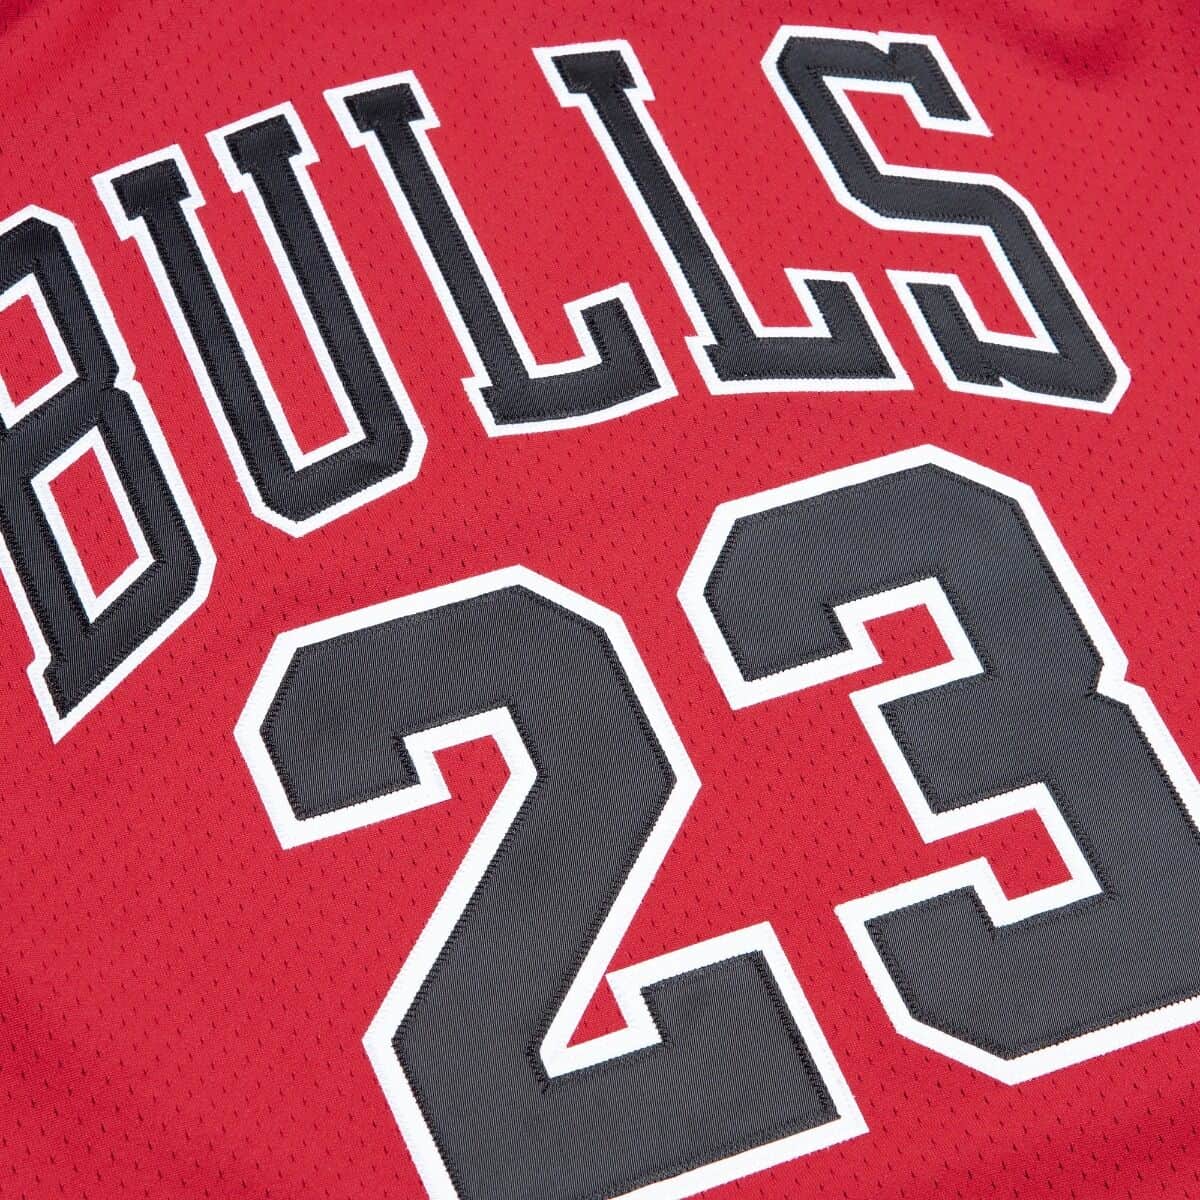 Michael Jordan Chicago Bulls 1997-98 Championship Hardwood